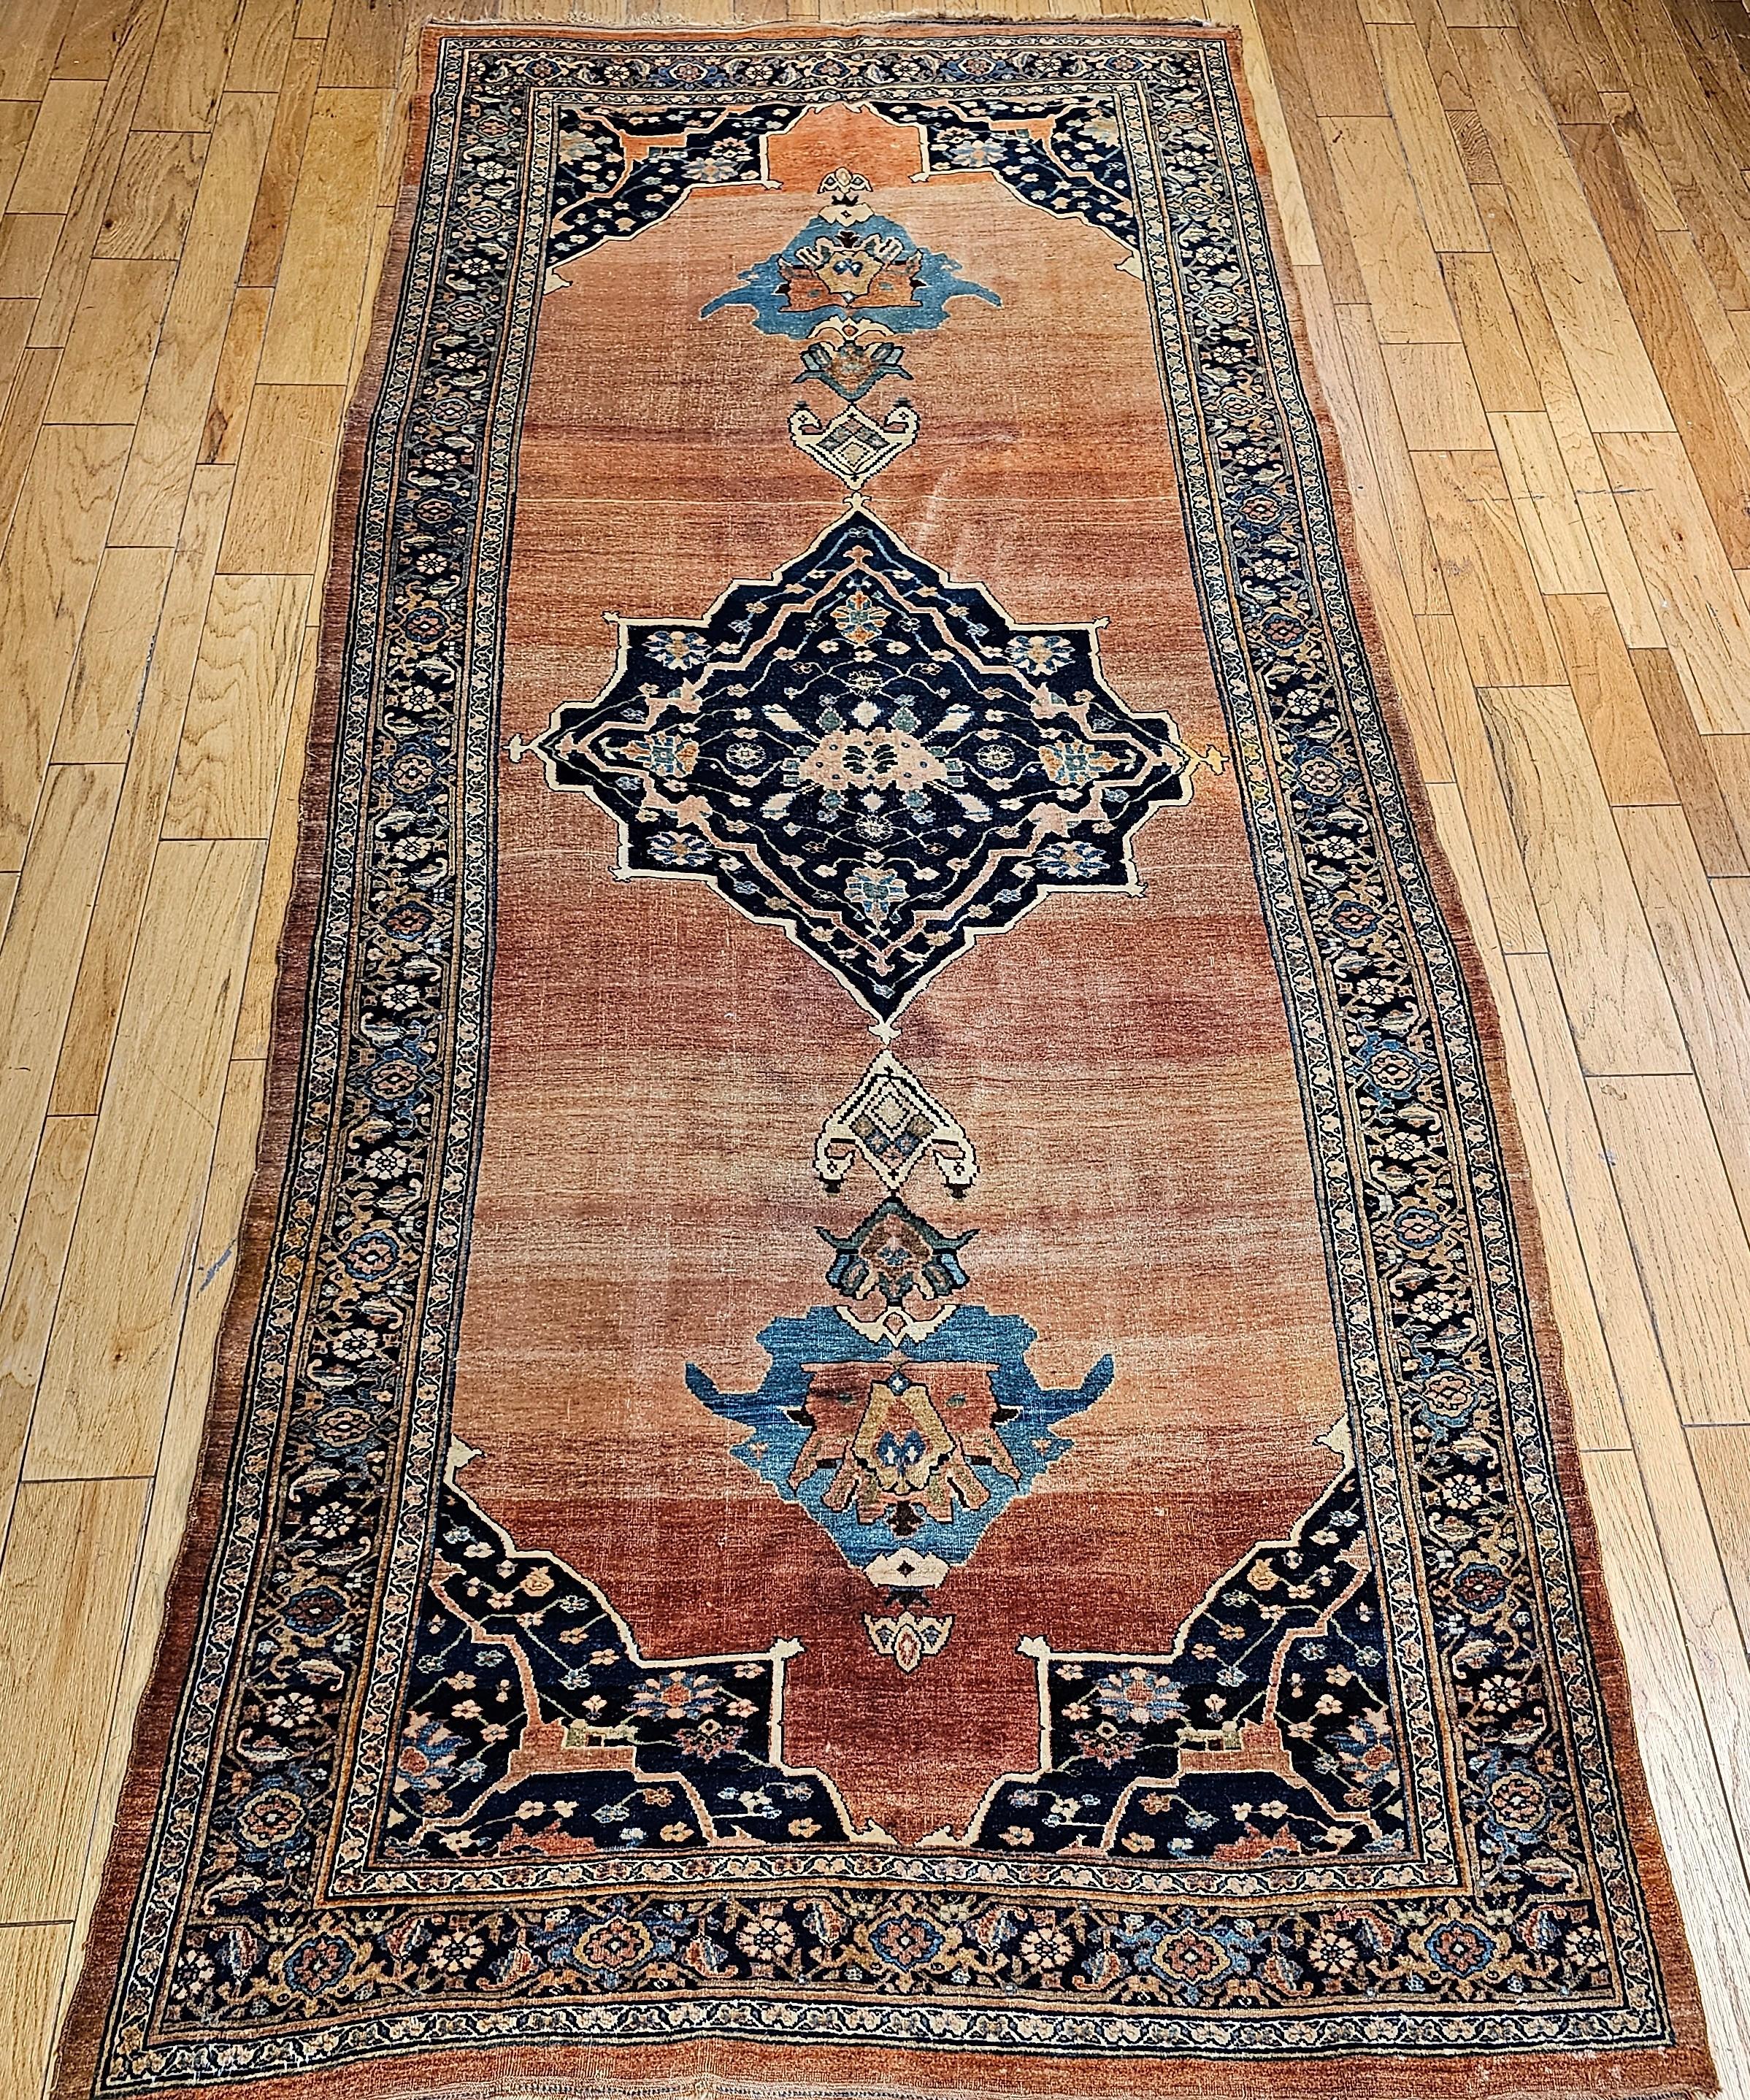 Ce tapis de galerie (corridor) Bidjar (Bijar) est un excellent exemple de l'art du tissage des tapis persans du dernier quart des années 1800. Le tapis Bidjar (Bijar) est un tapis unique et extrêmement désirable de couleur rouille abrash à champ